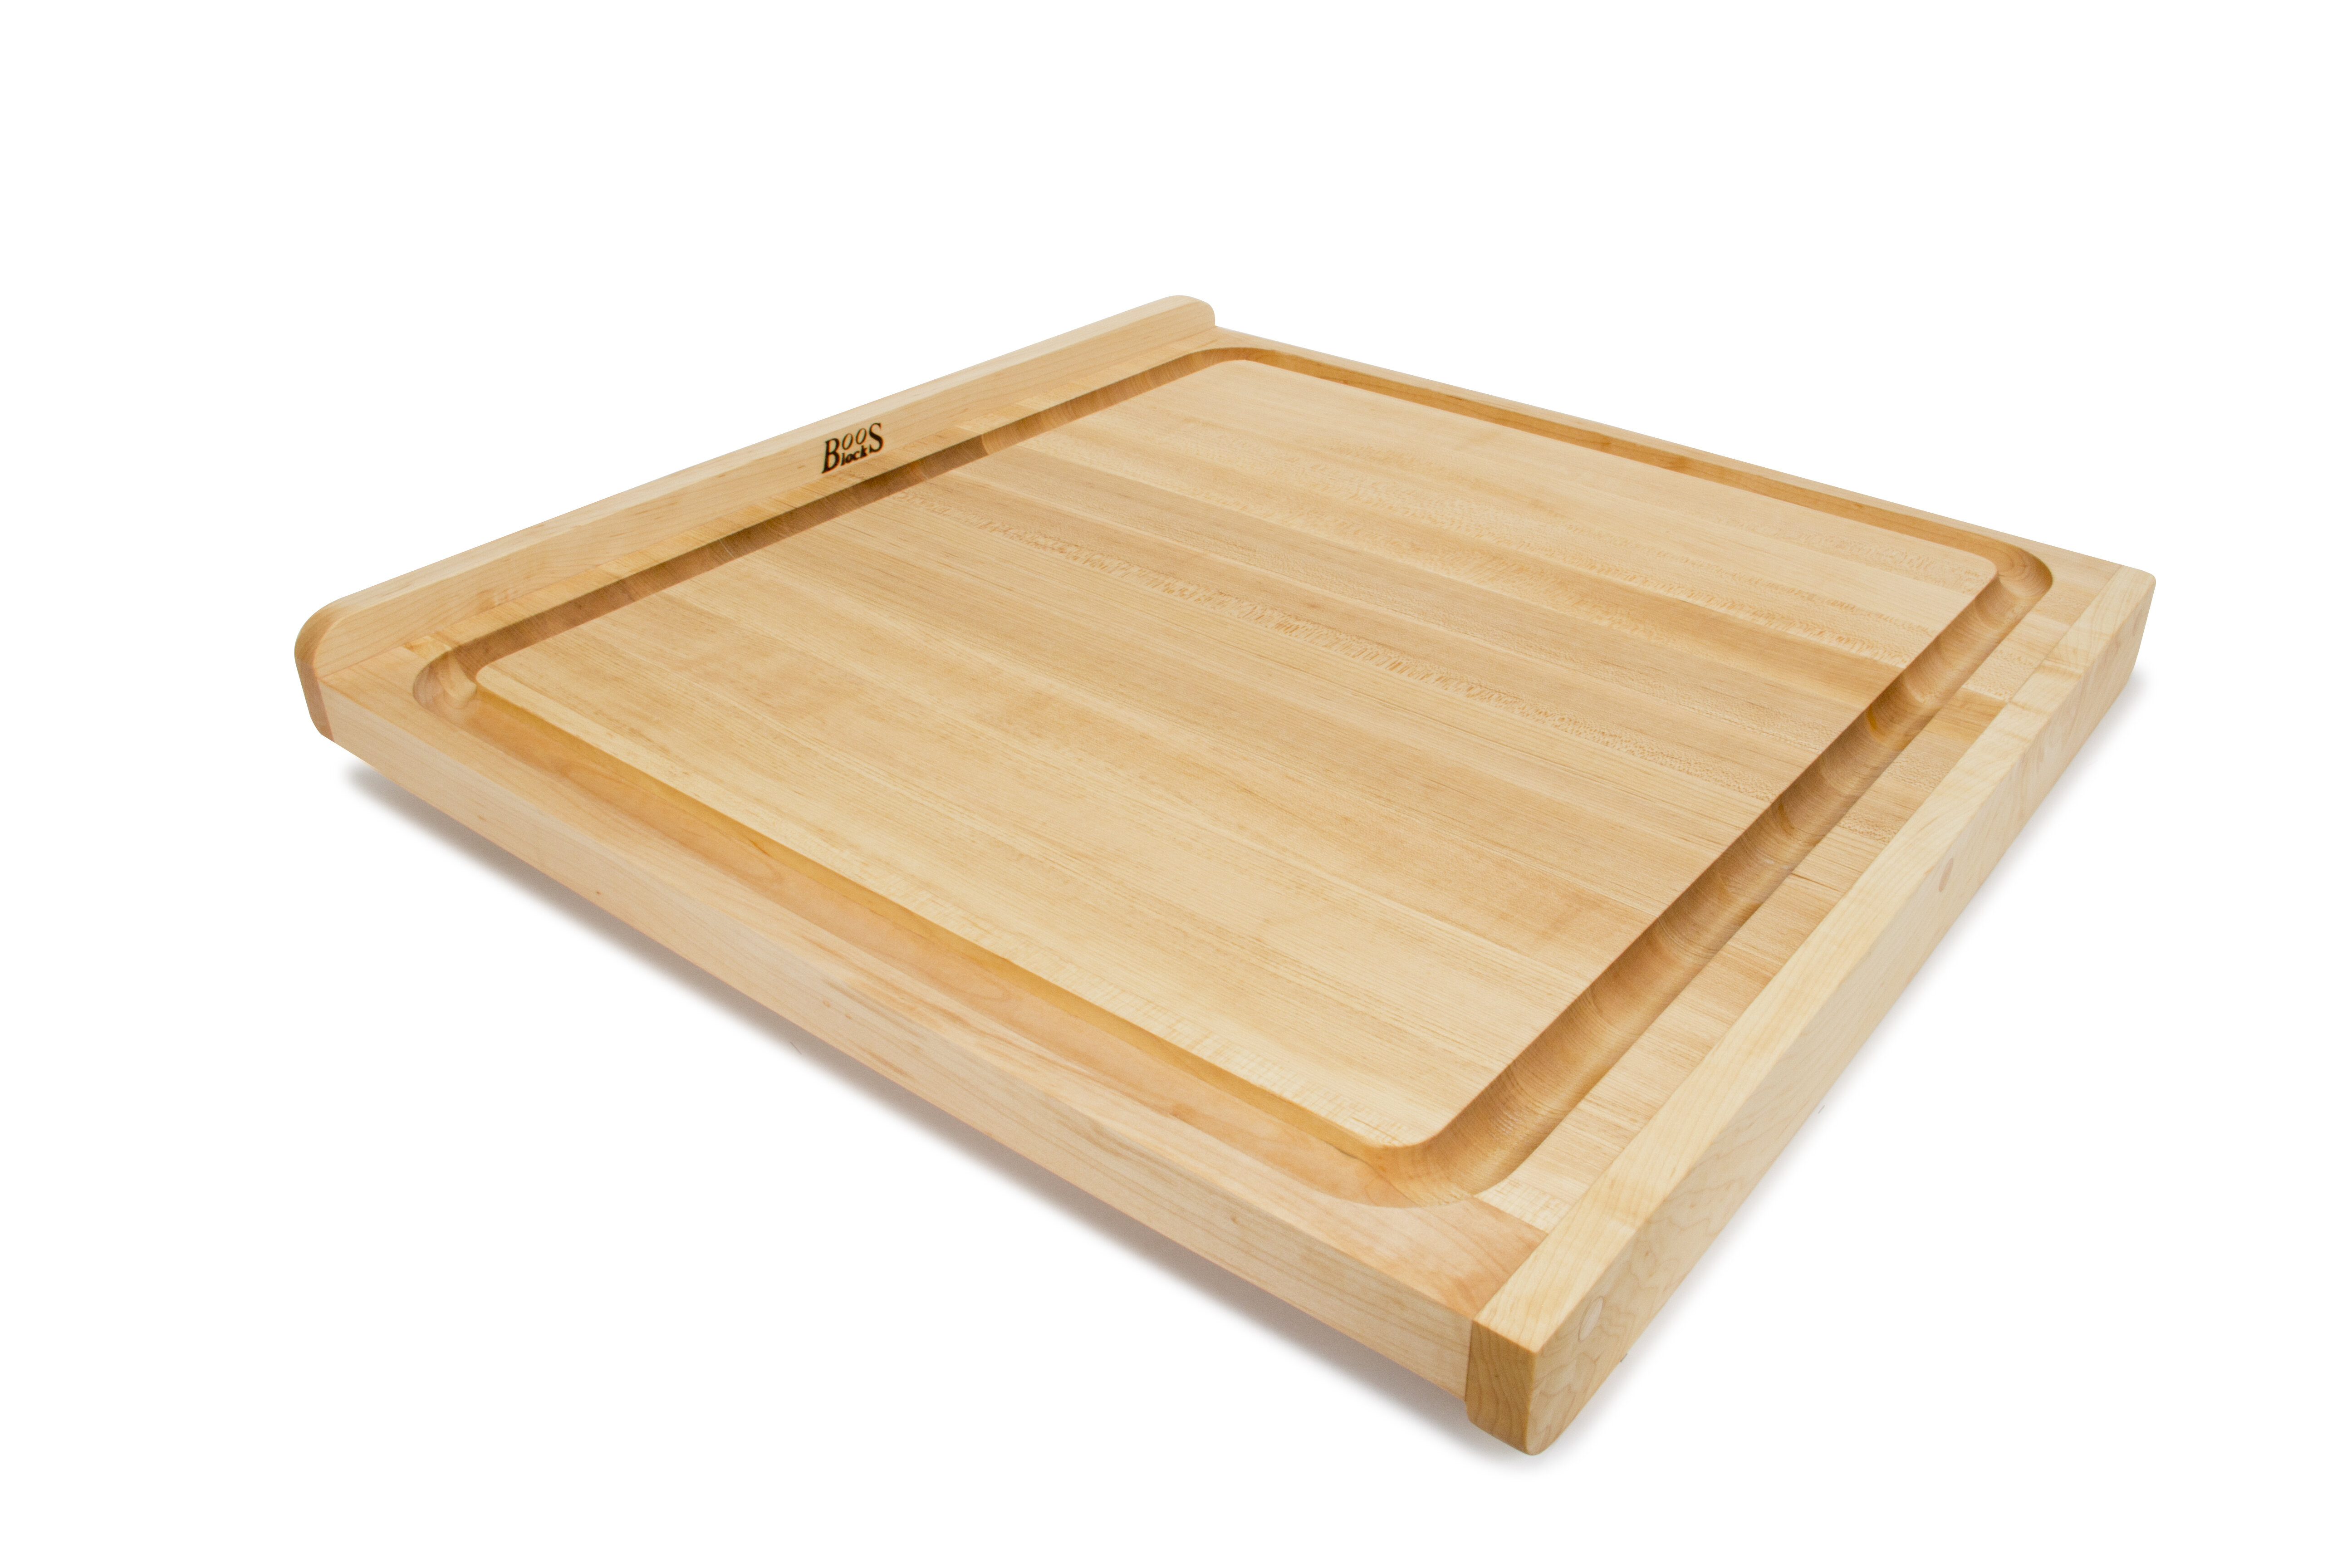 boos block cutting board